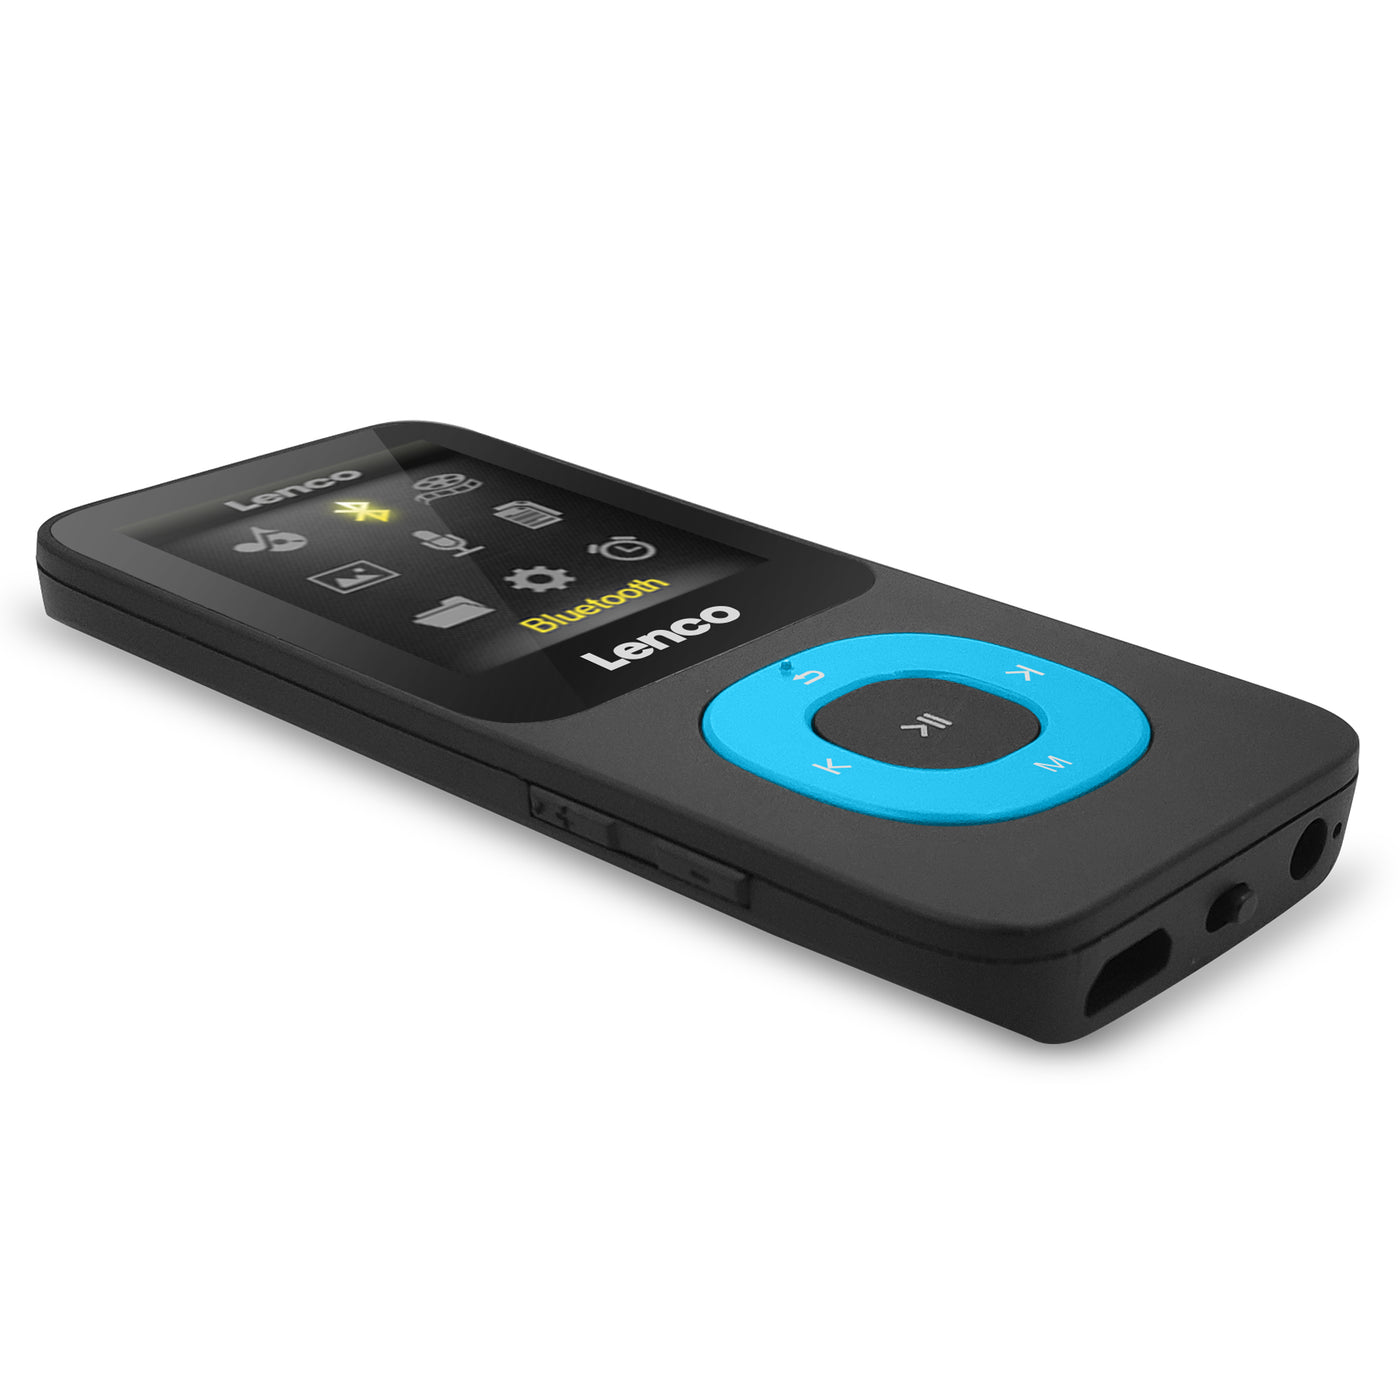 Lenco Xemio-769BU - Odtwarzacz MP3/MP4 z kartą micro SD 8GB Bluetooth® - Niebieski 